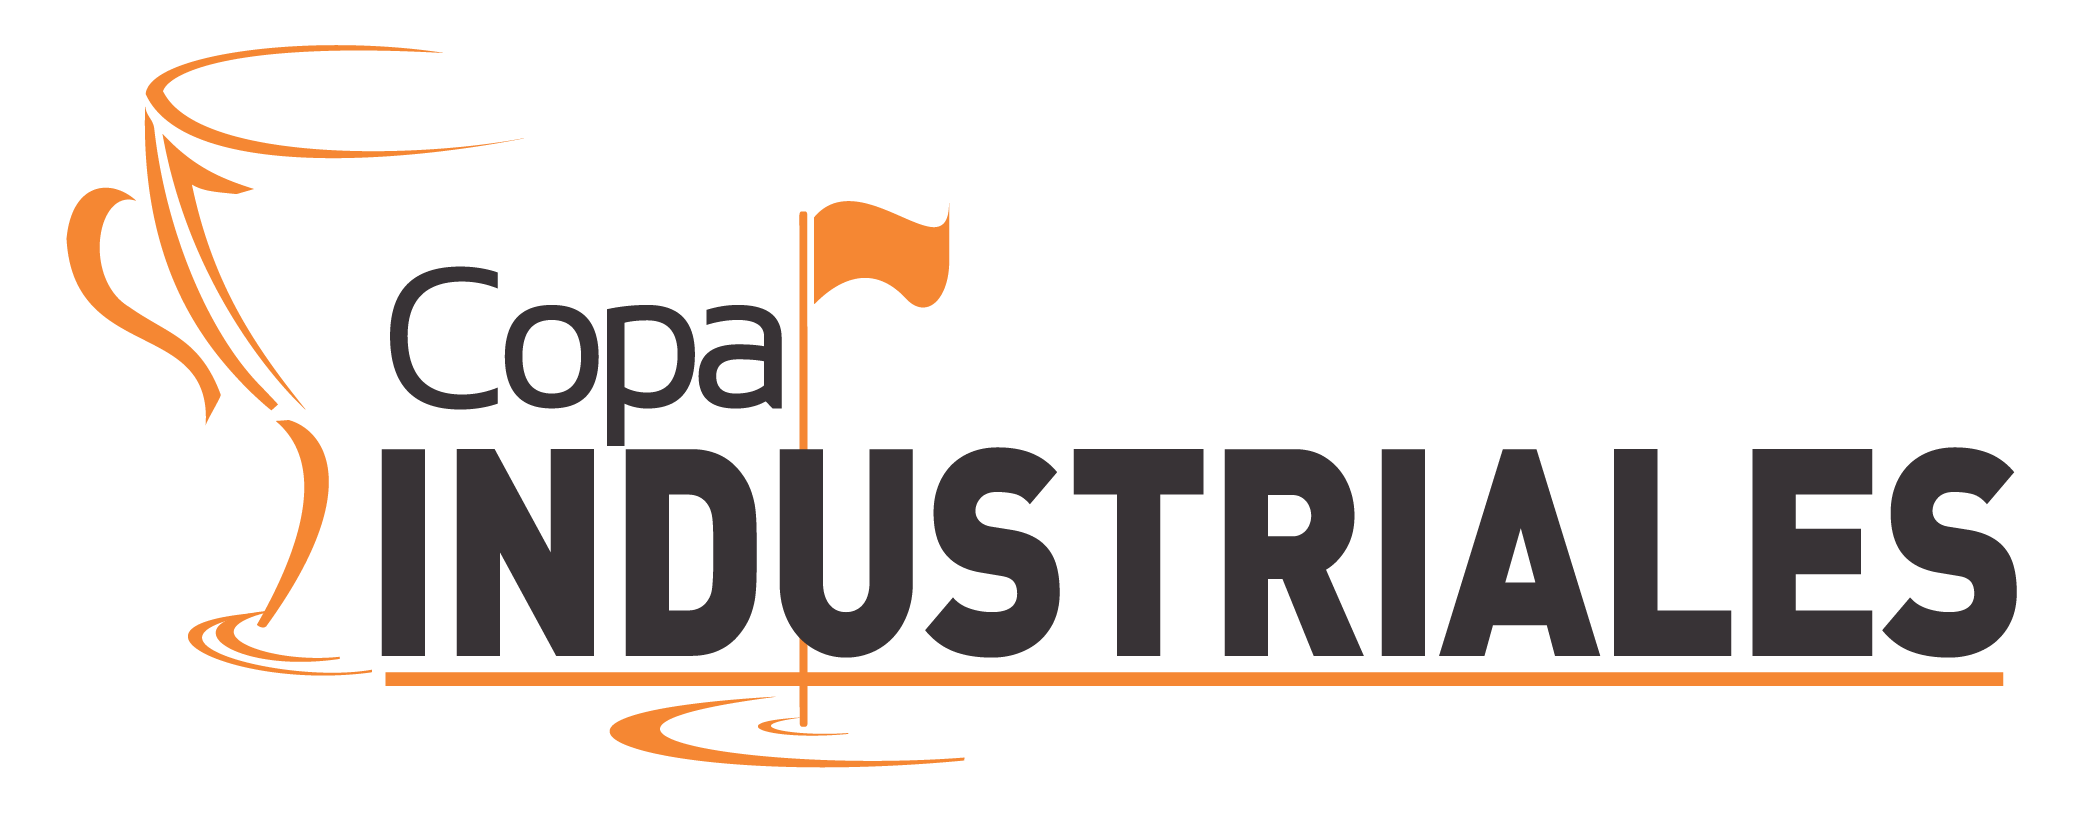 Logo Copa Industriales-01